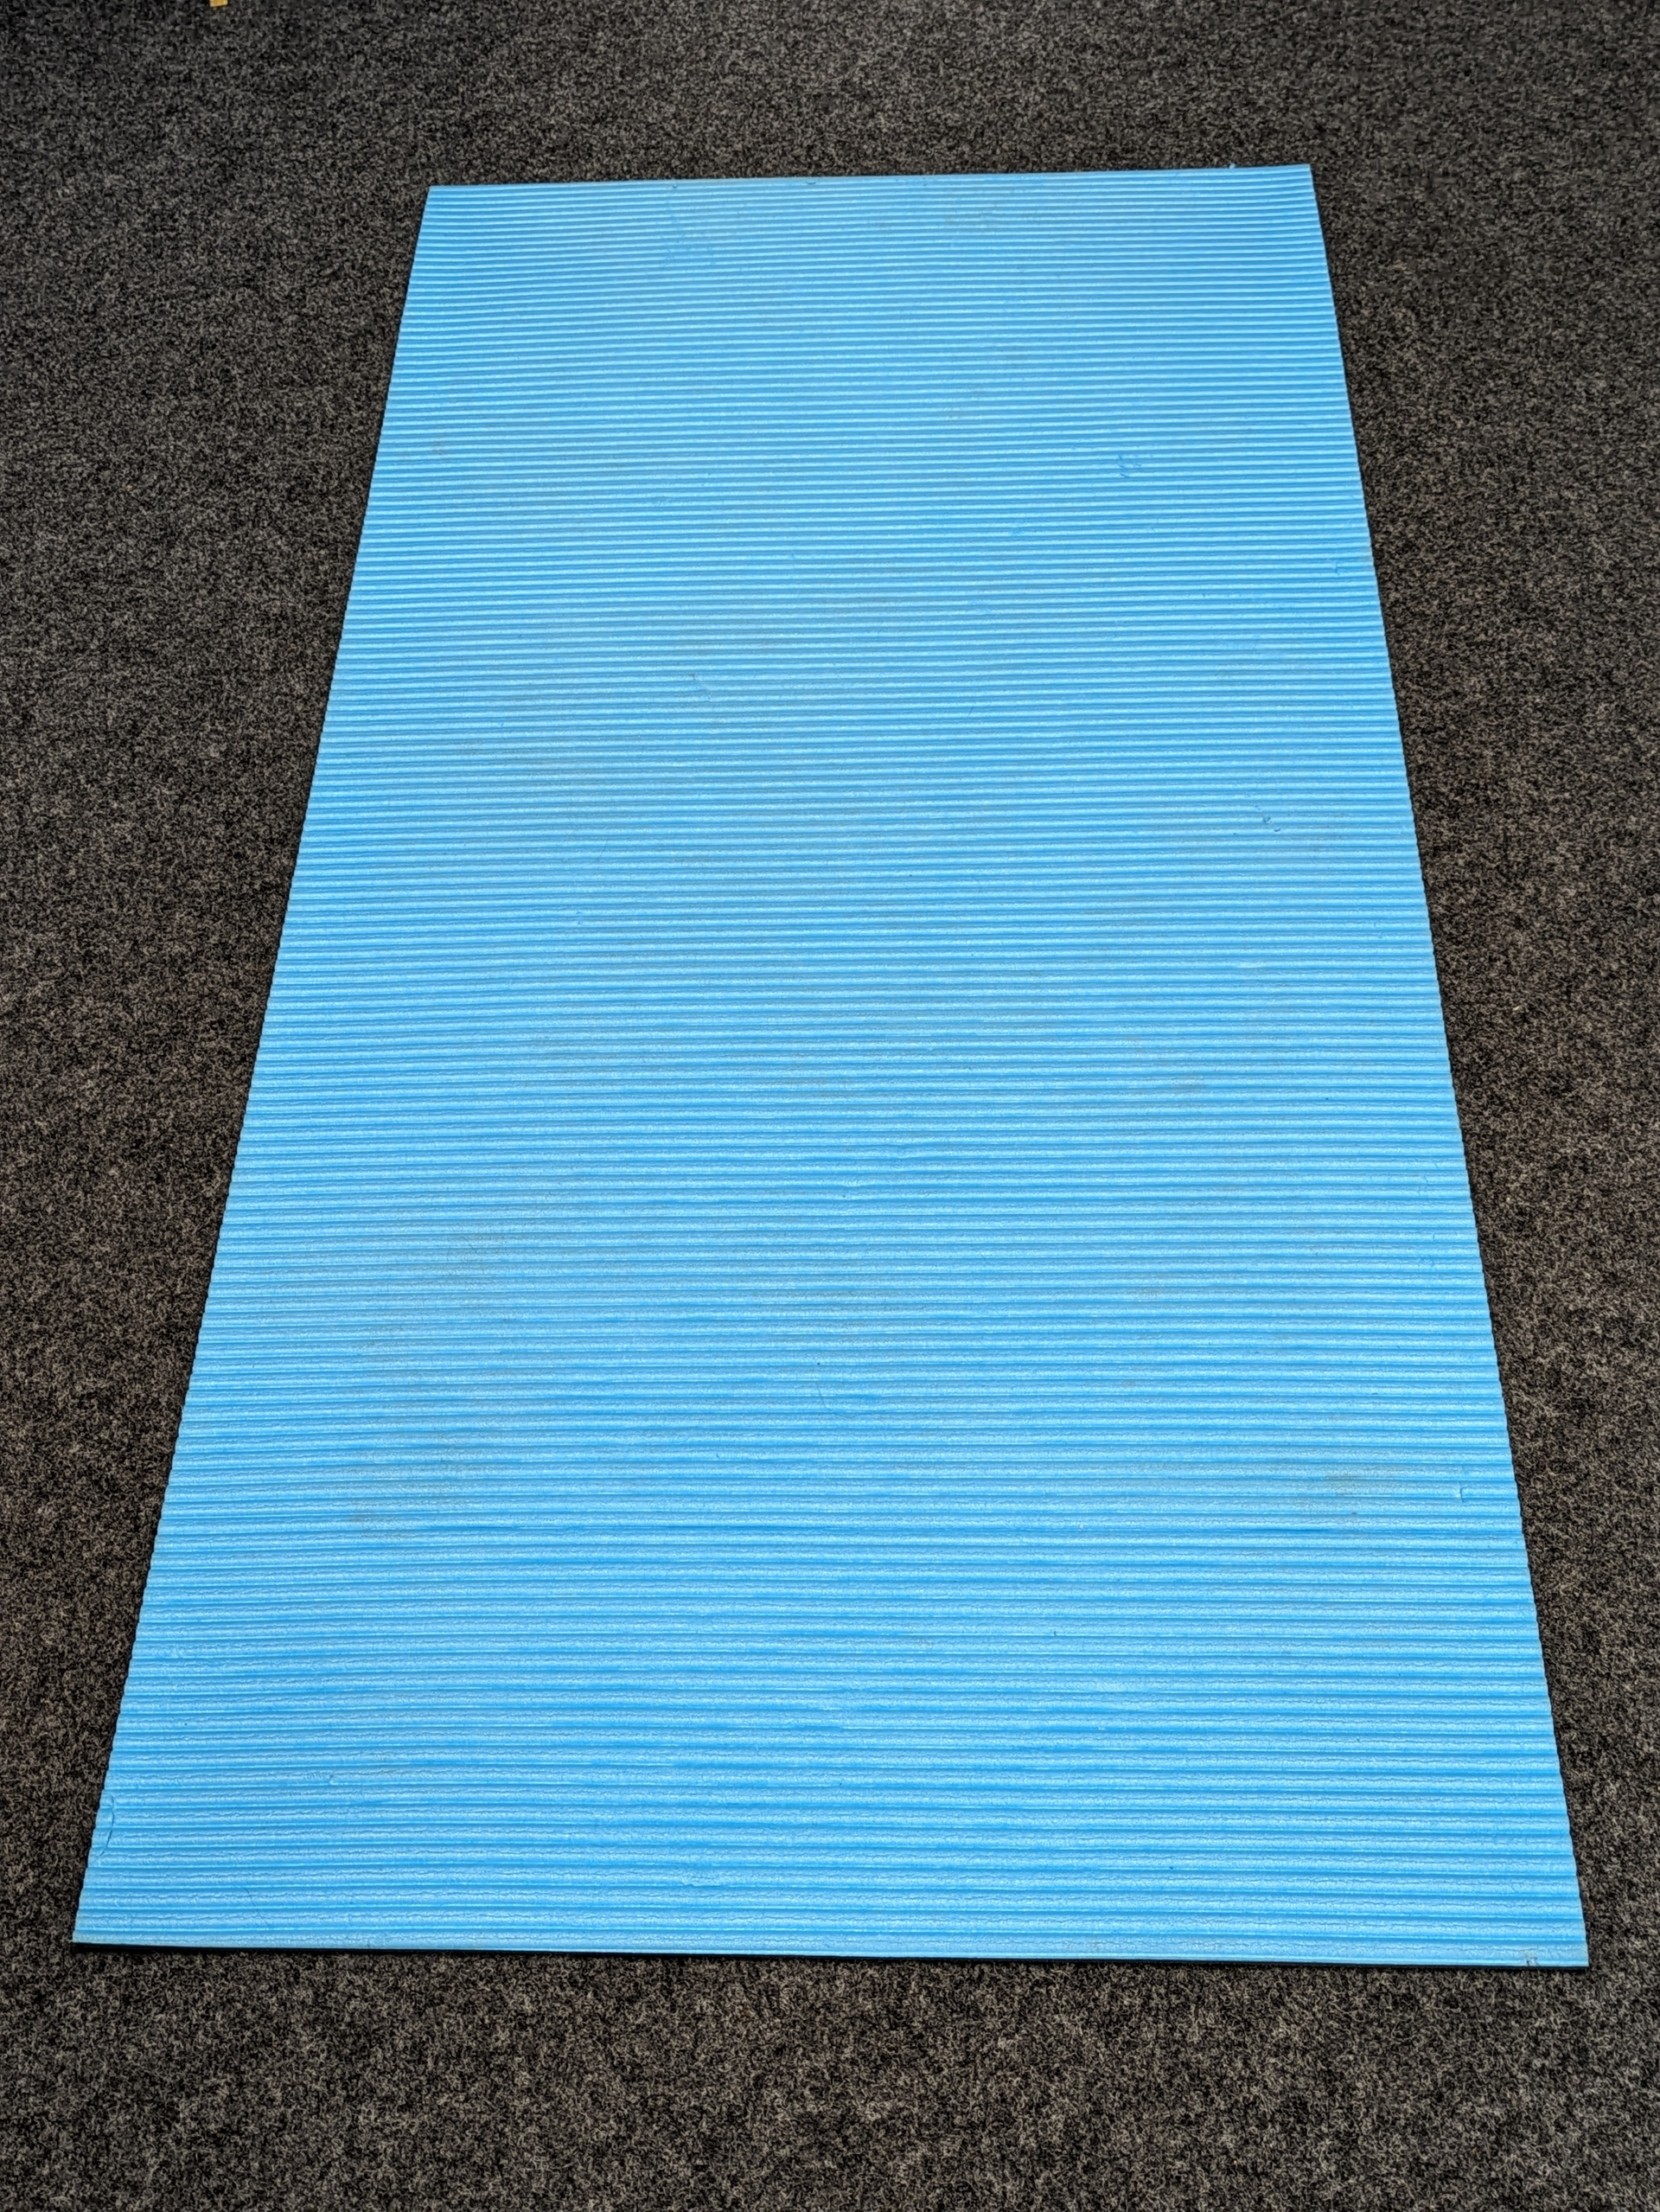 Foto von blauer Yogamatte, die auf dem Boden ausgebreitet ist